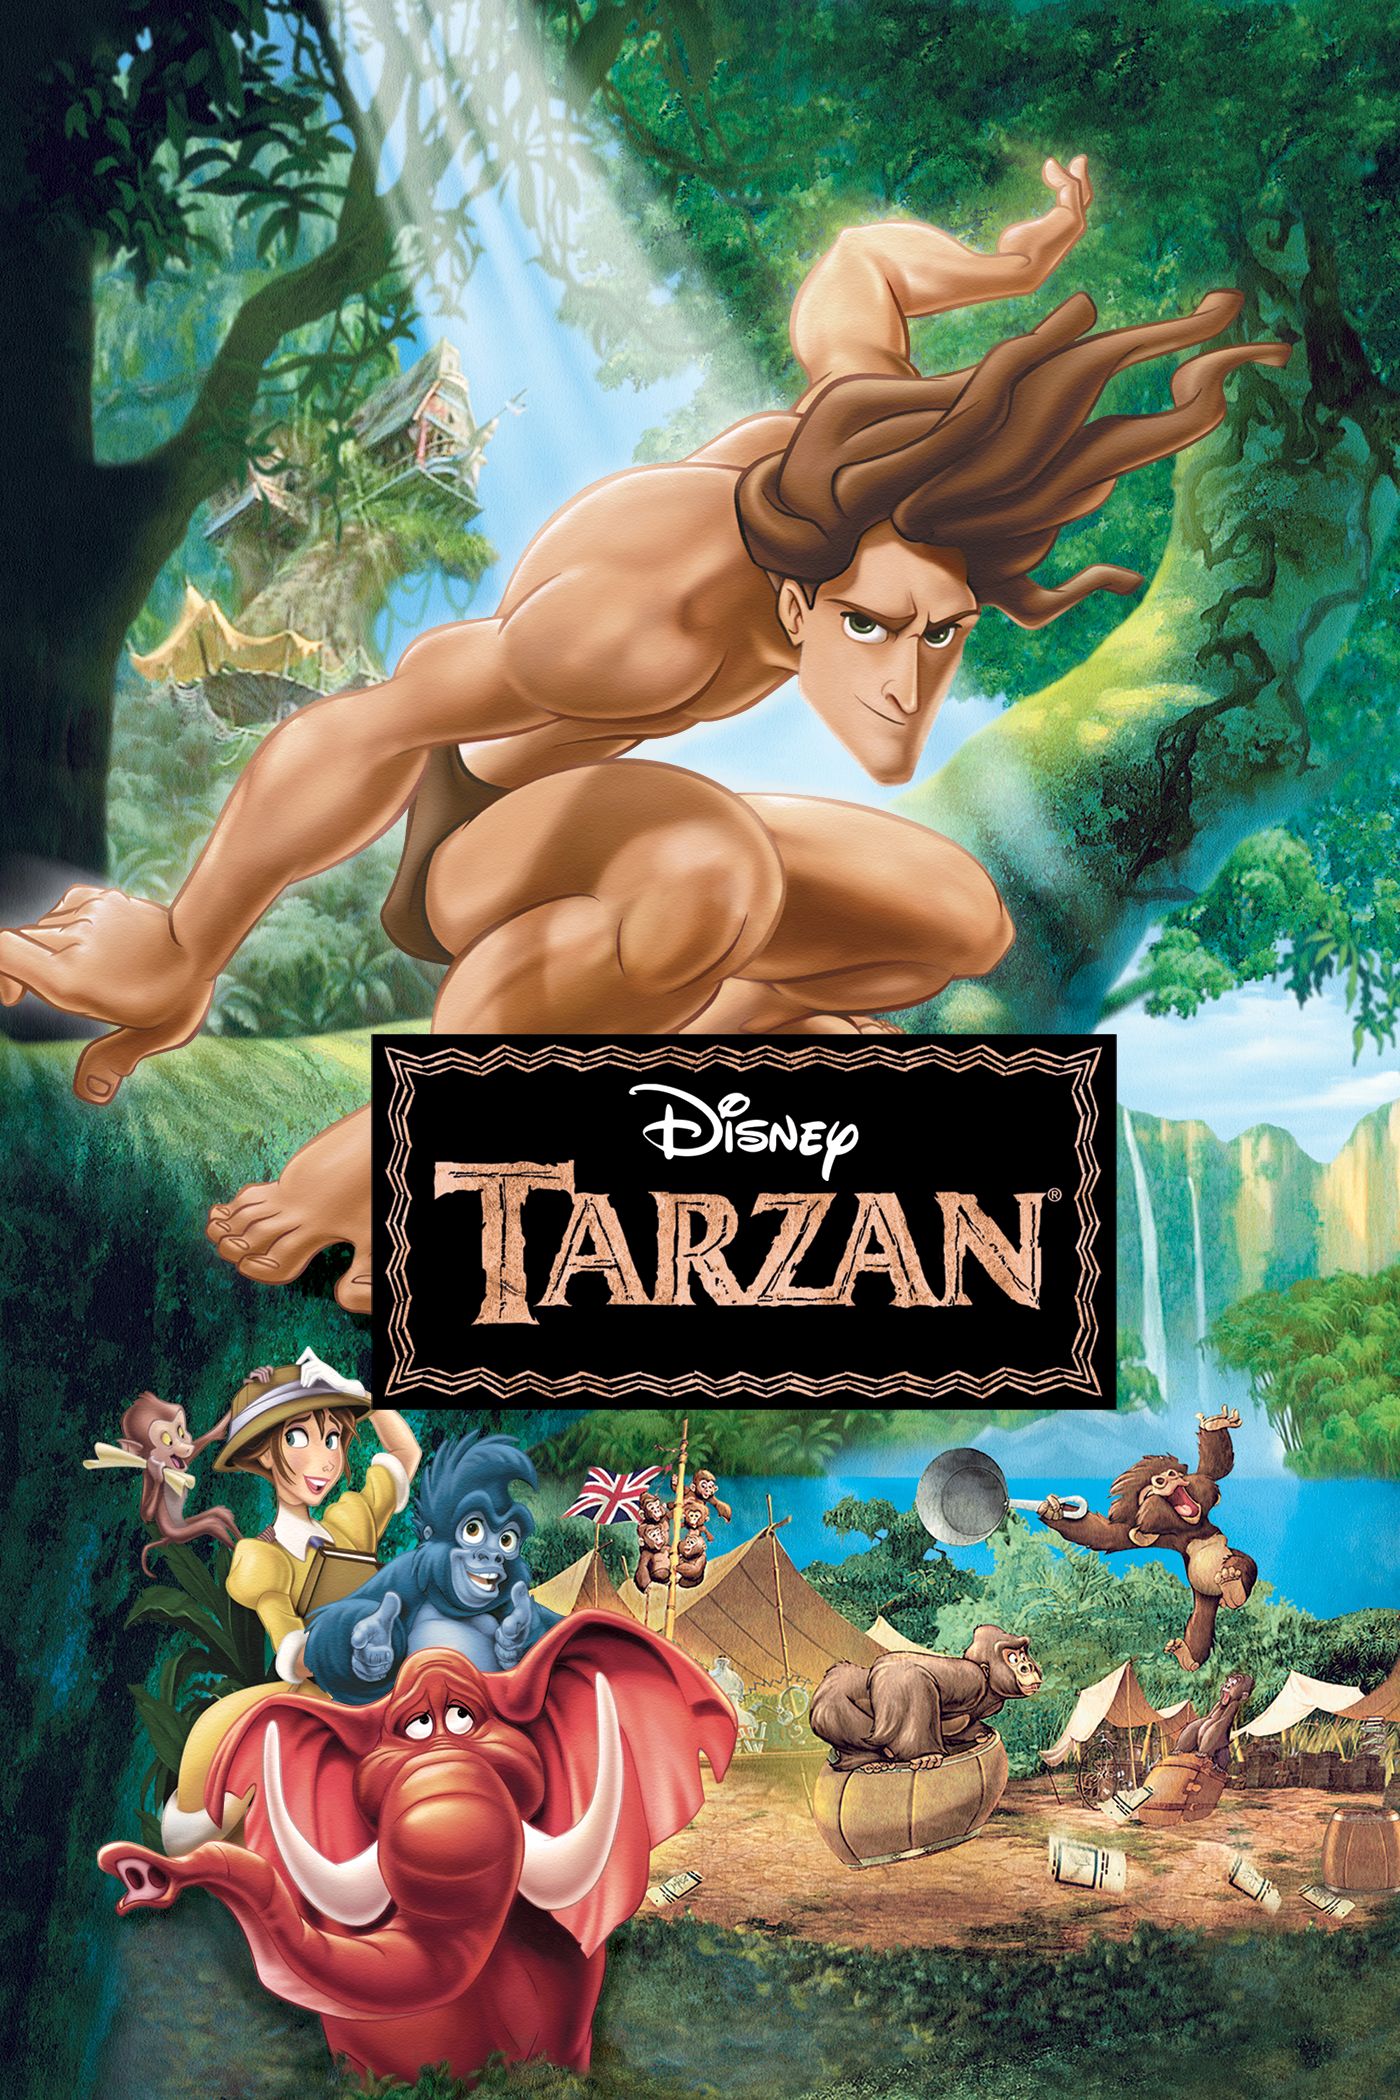 Tarzan full movie disney 1999 english